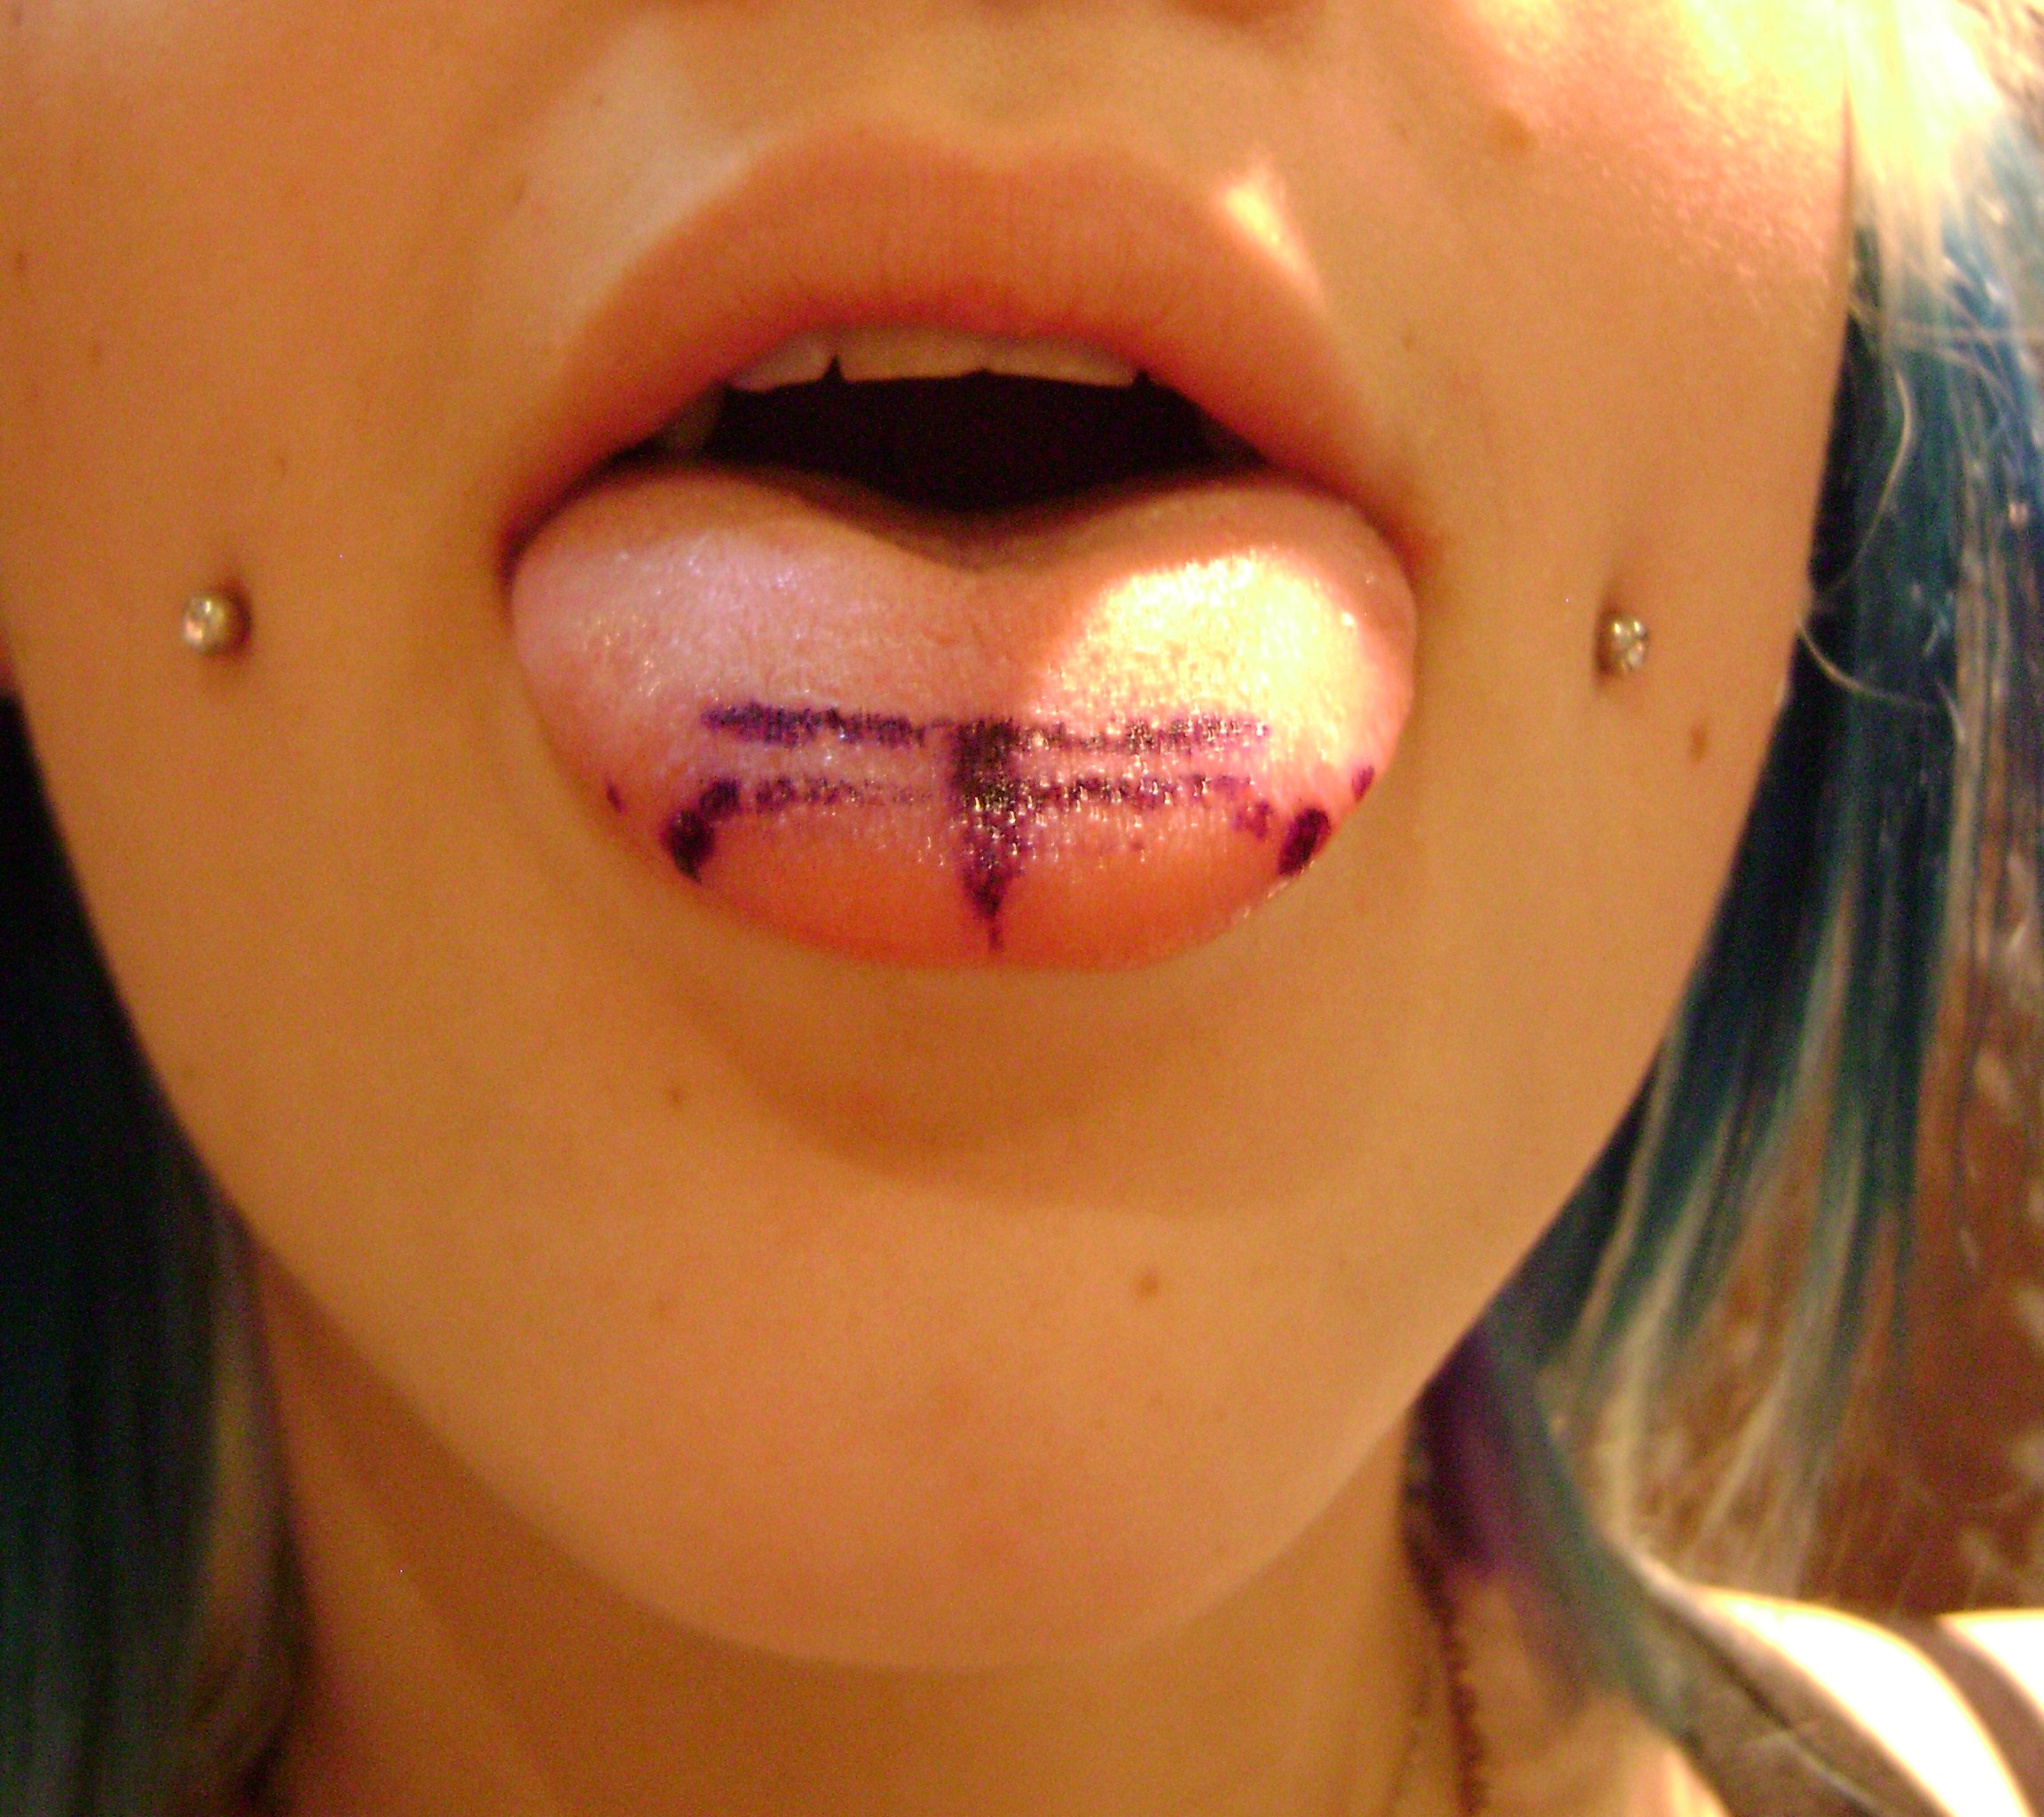 dermal tongue piercing. 